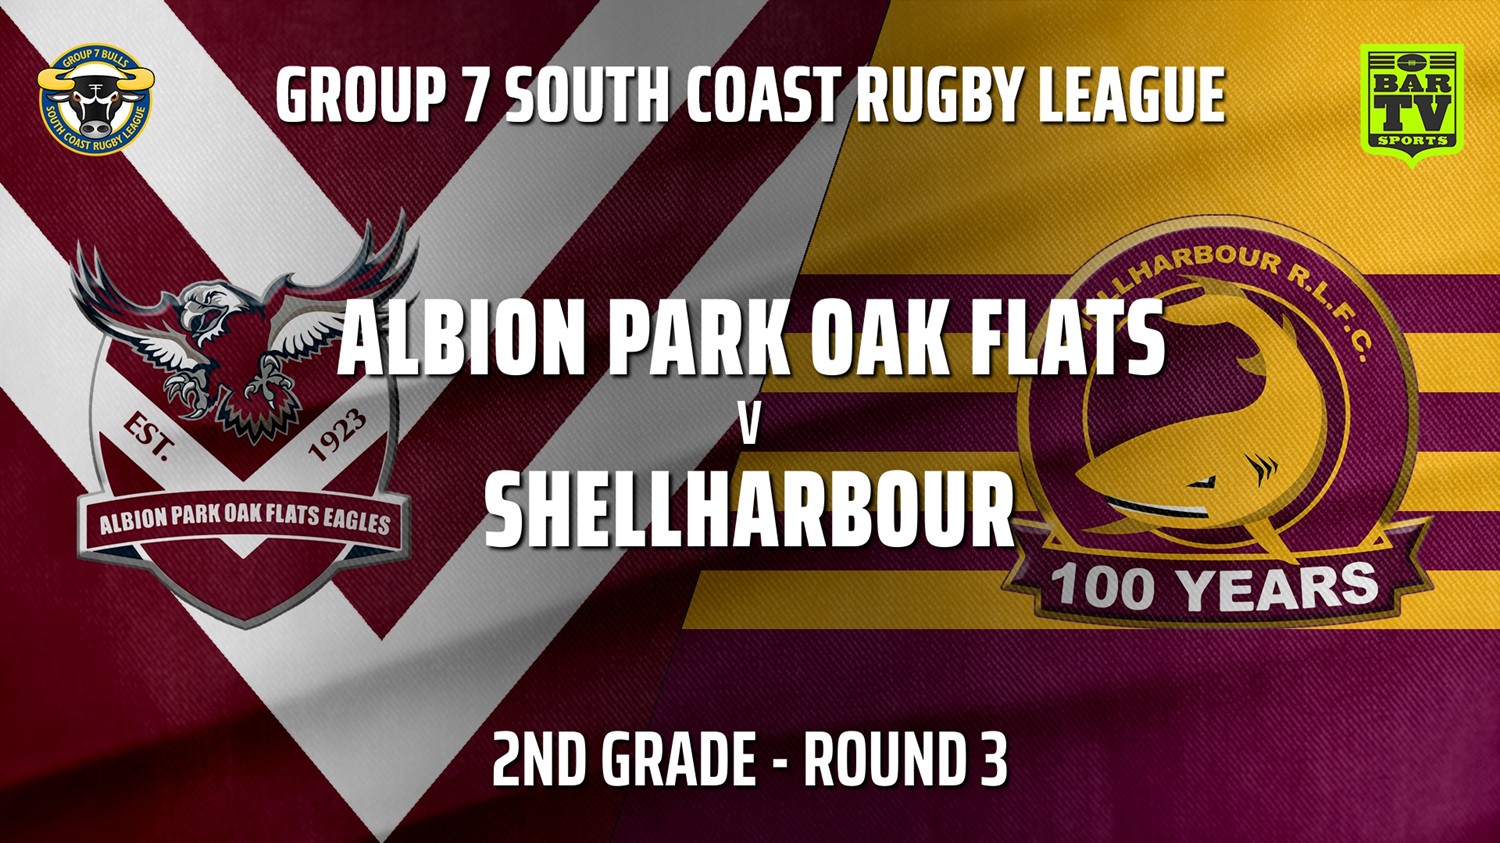 210502-Group 7 RL Round 3 - 2nd Grade - Albion Park Oak Flats v Shellharbour Sharks Slate Image